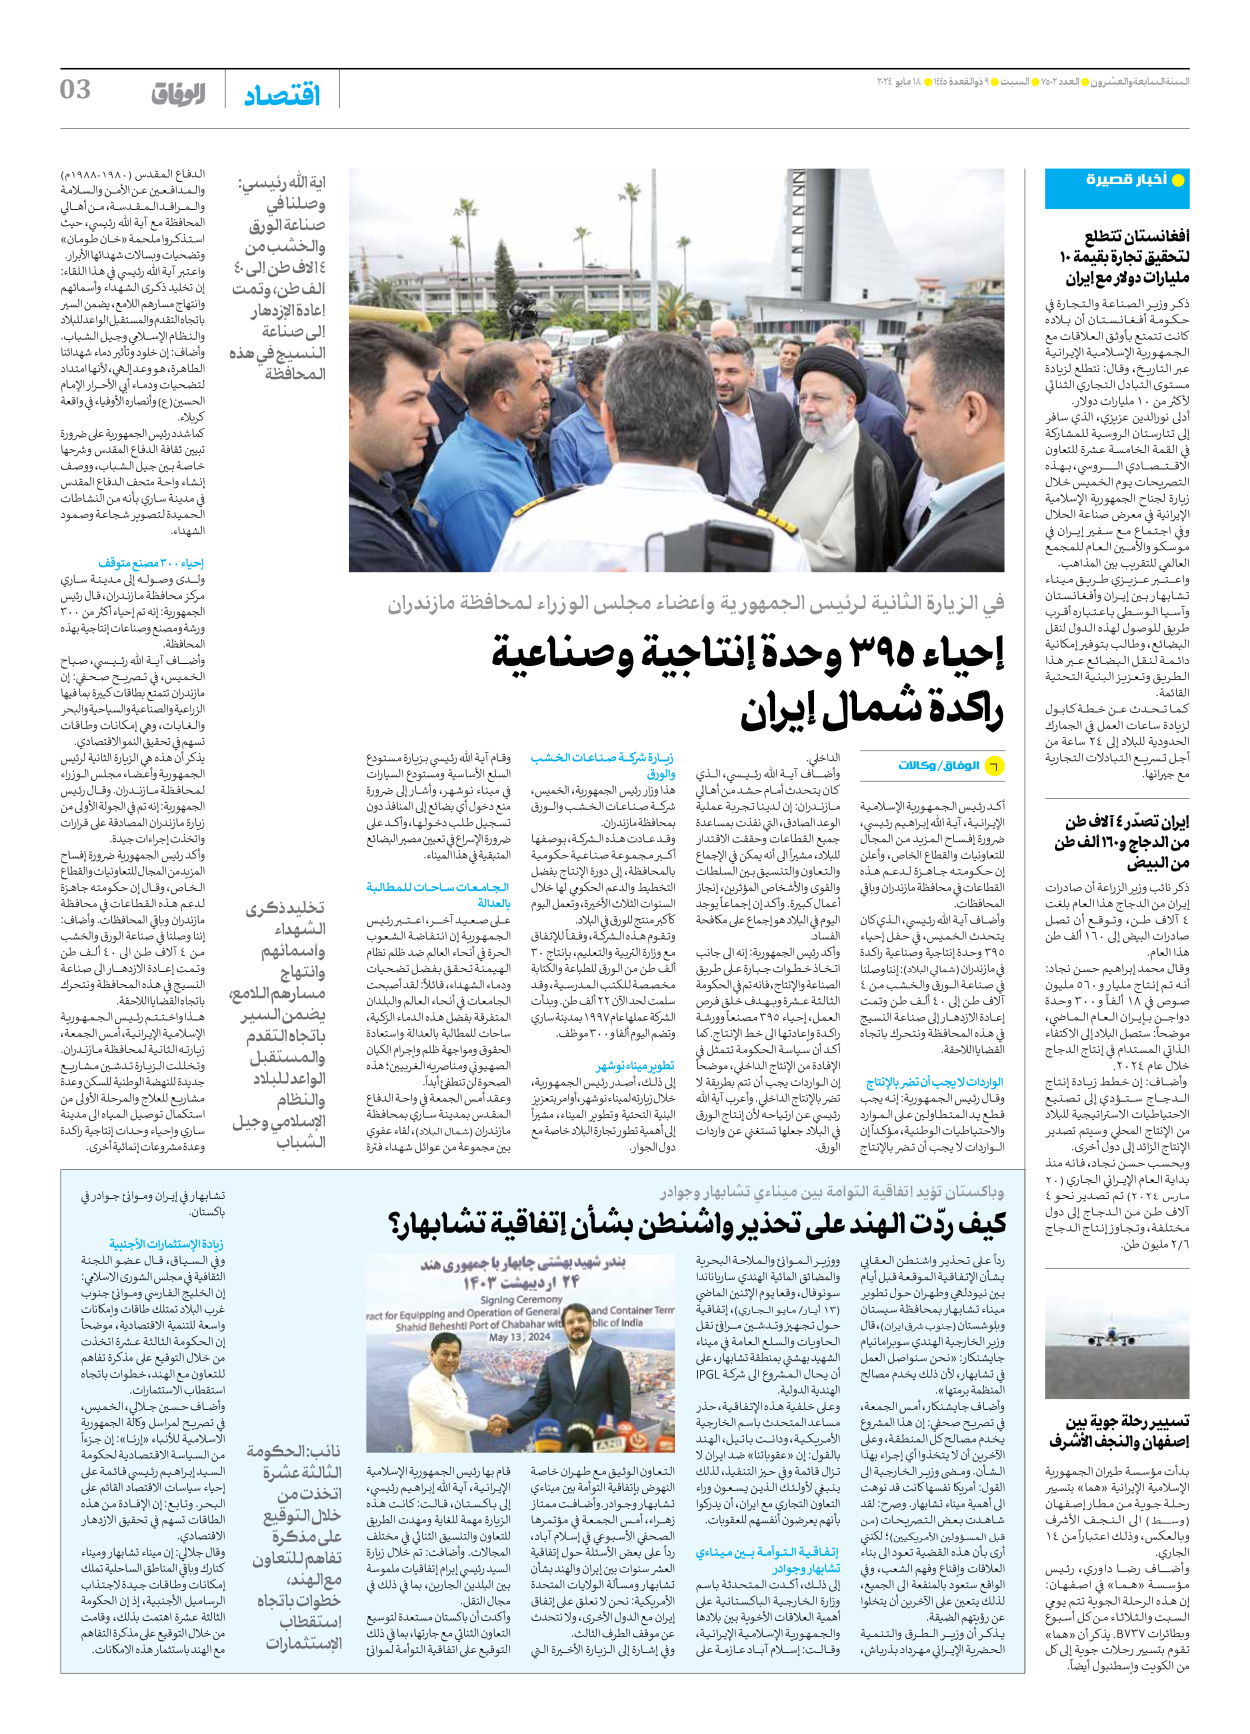 صحیفة ایران الدولیة الوفاق - العدد سبعة آلاف وخمسمائة واثنان - ١٨ مايو ٢٠٢٤ - الصفحة ۳